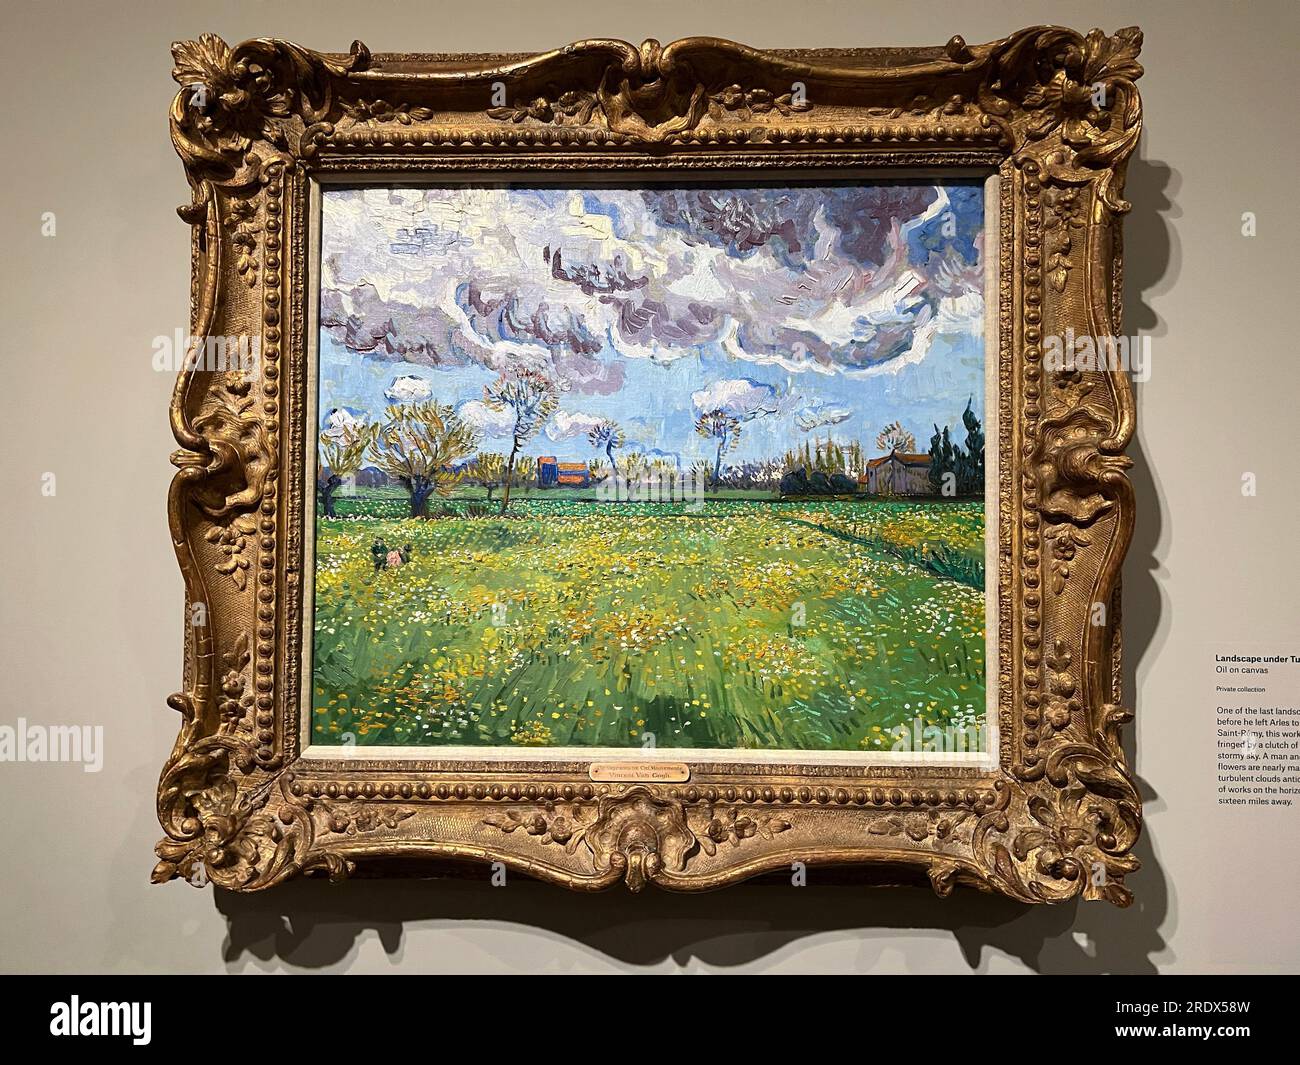 L'exposition du Metropolitan Museum of Art, « les cyprès de Van Gogh », est la première exposition consacrée aux arbres, parmi les plus célèbres de l'histoire de l'art. Paysage sous ciel turbulent, avril 1889, Vincent Van Gogh Banque D'Images